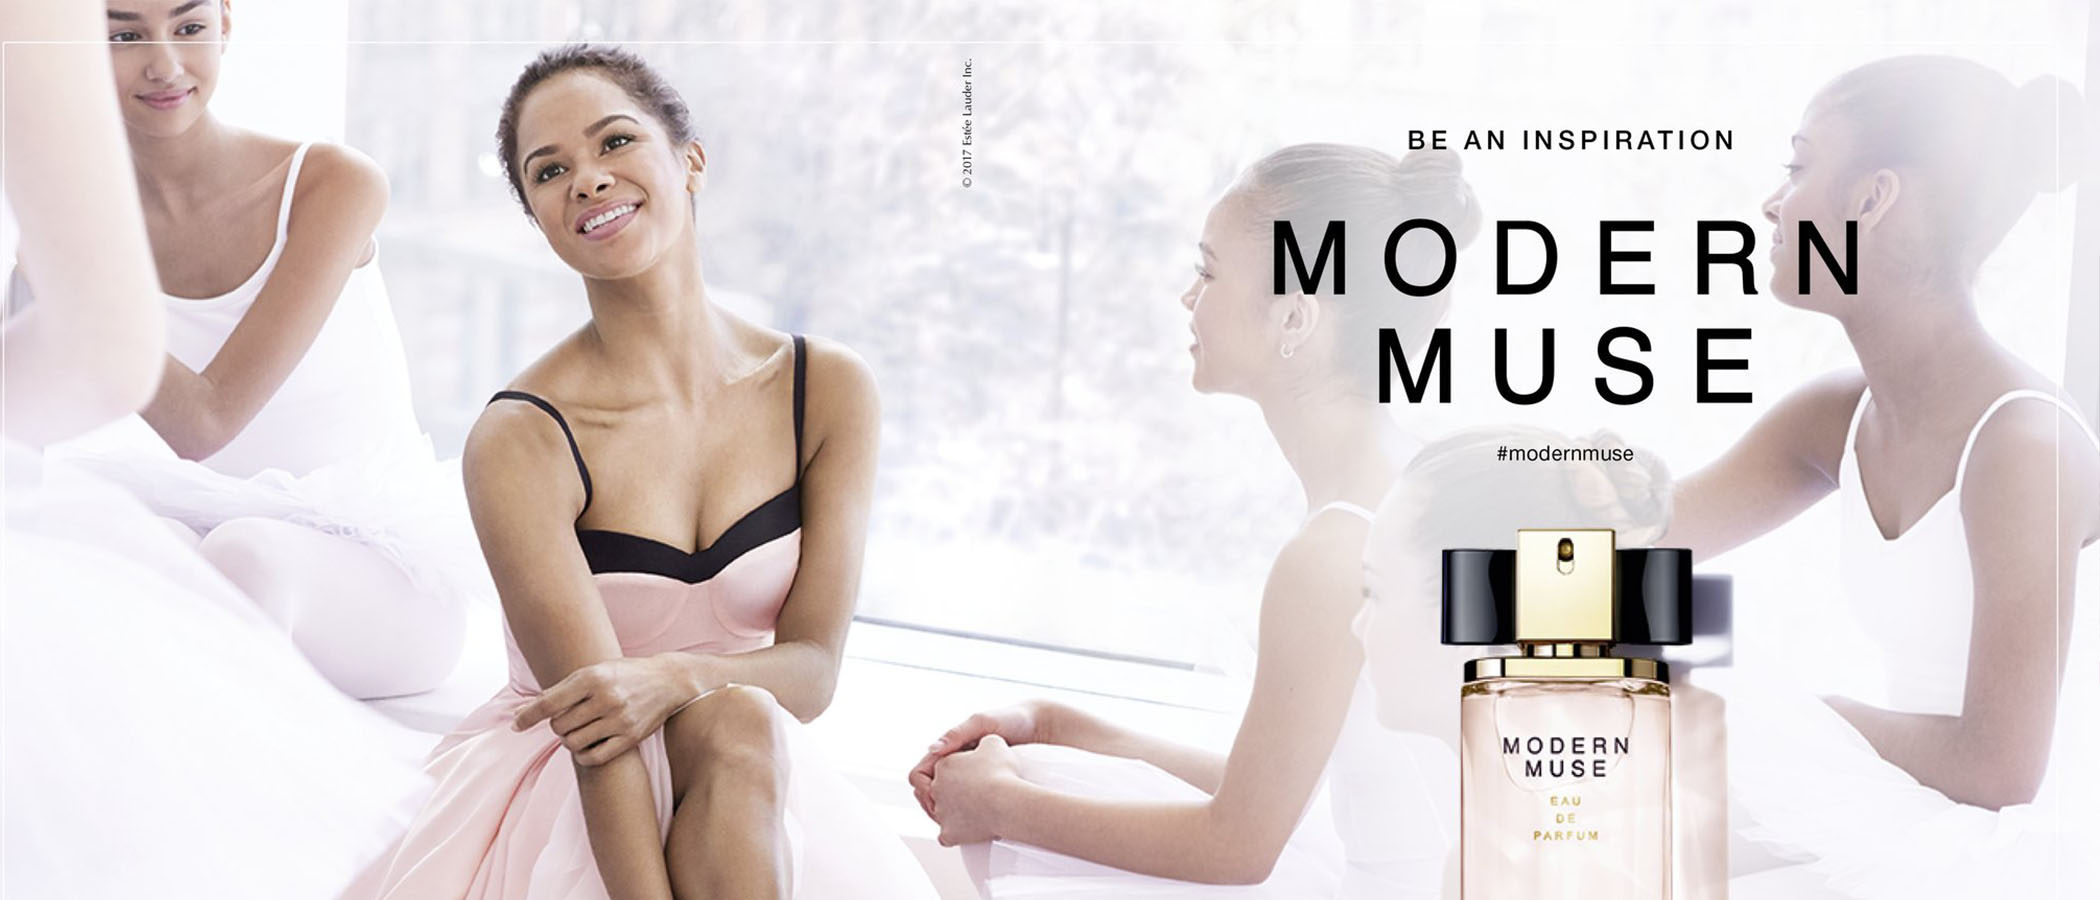 Misty Copeland será la portavoz a nivel mundial de la fragancia 'Modern Muse' de Estee Lauder